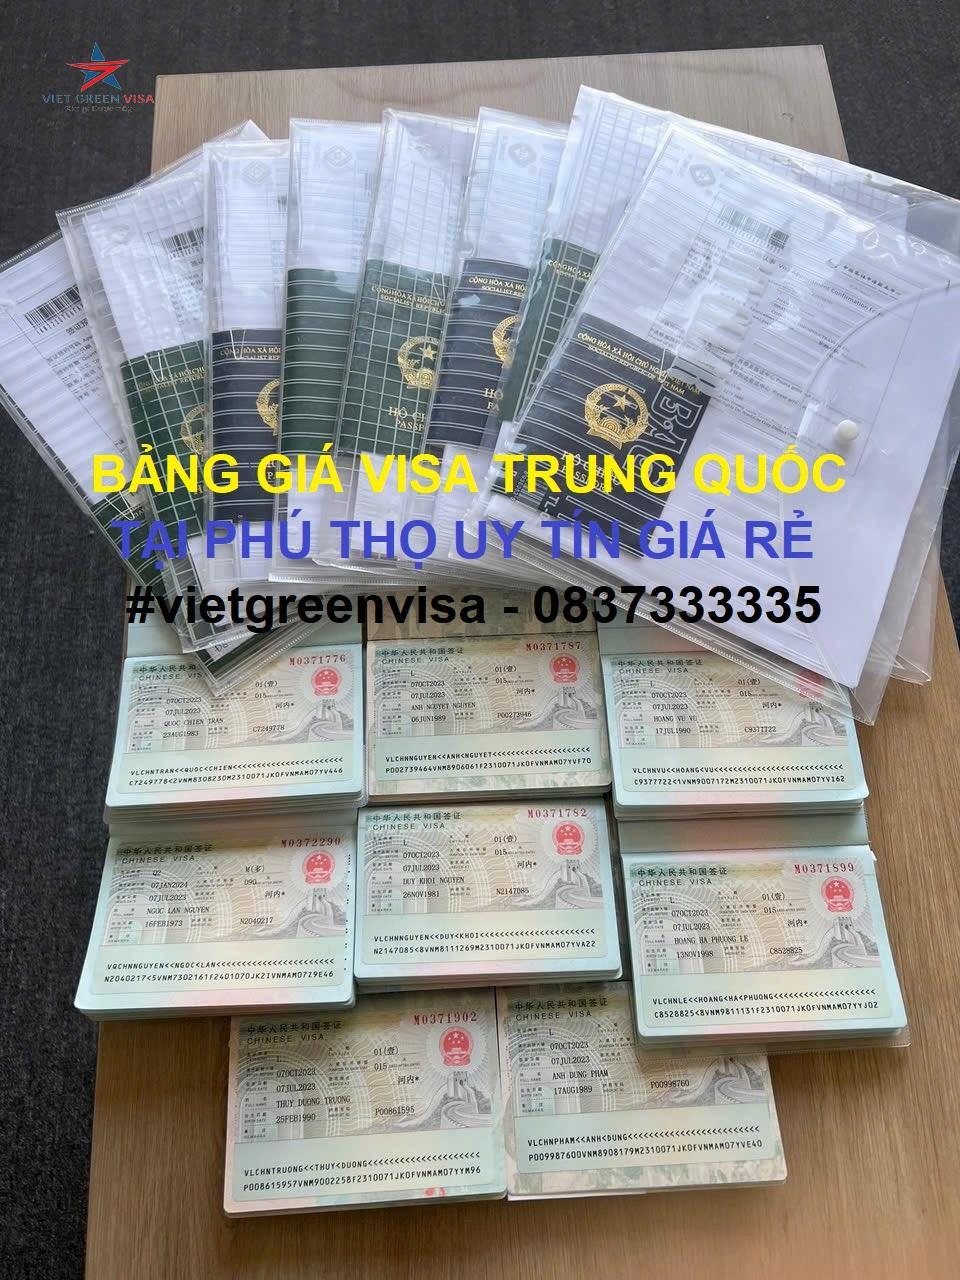 Dịch vụ xin visa Trung Quốc tại Phú Thọ trọn gói